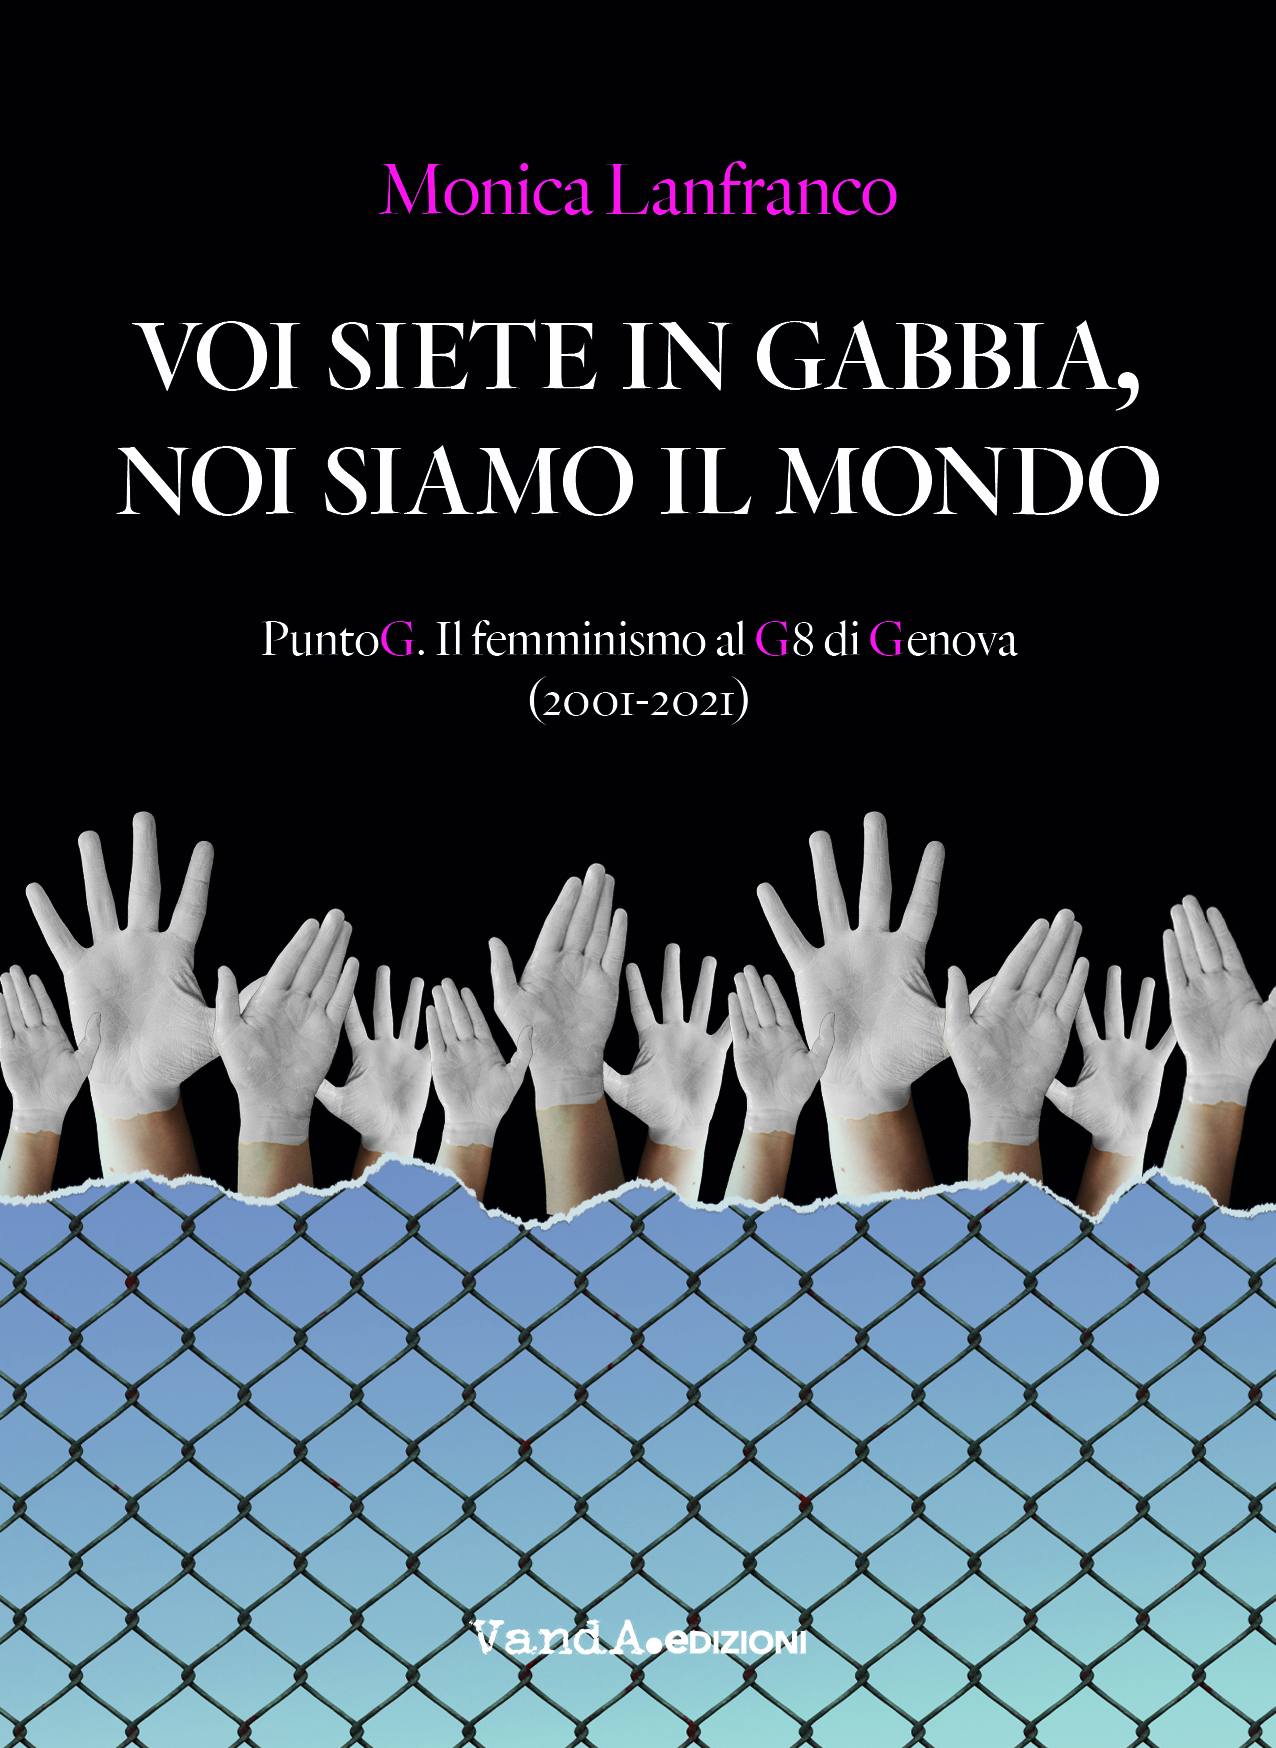 Voi siete in gabbia, noi siamo il mondo. PuntoG. Il femminismo al G8 di Genova(2001-2021)